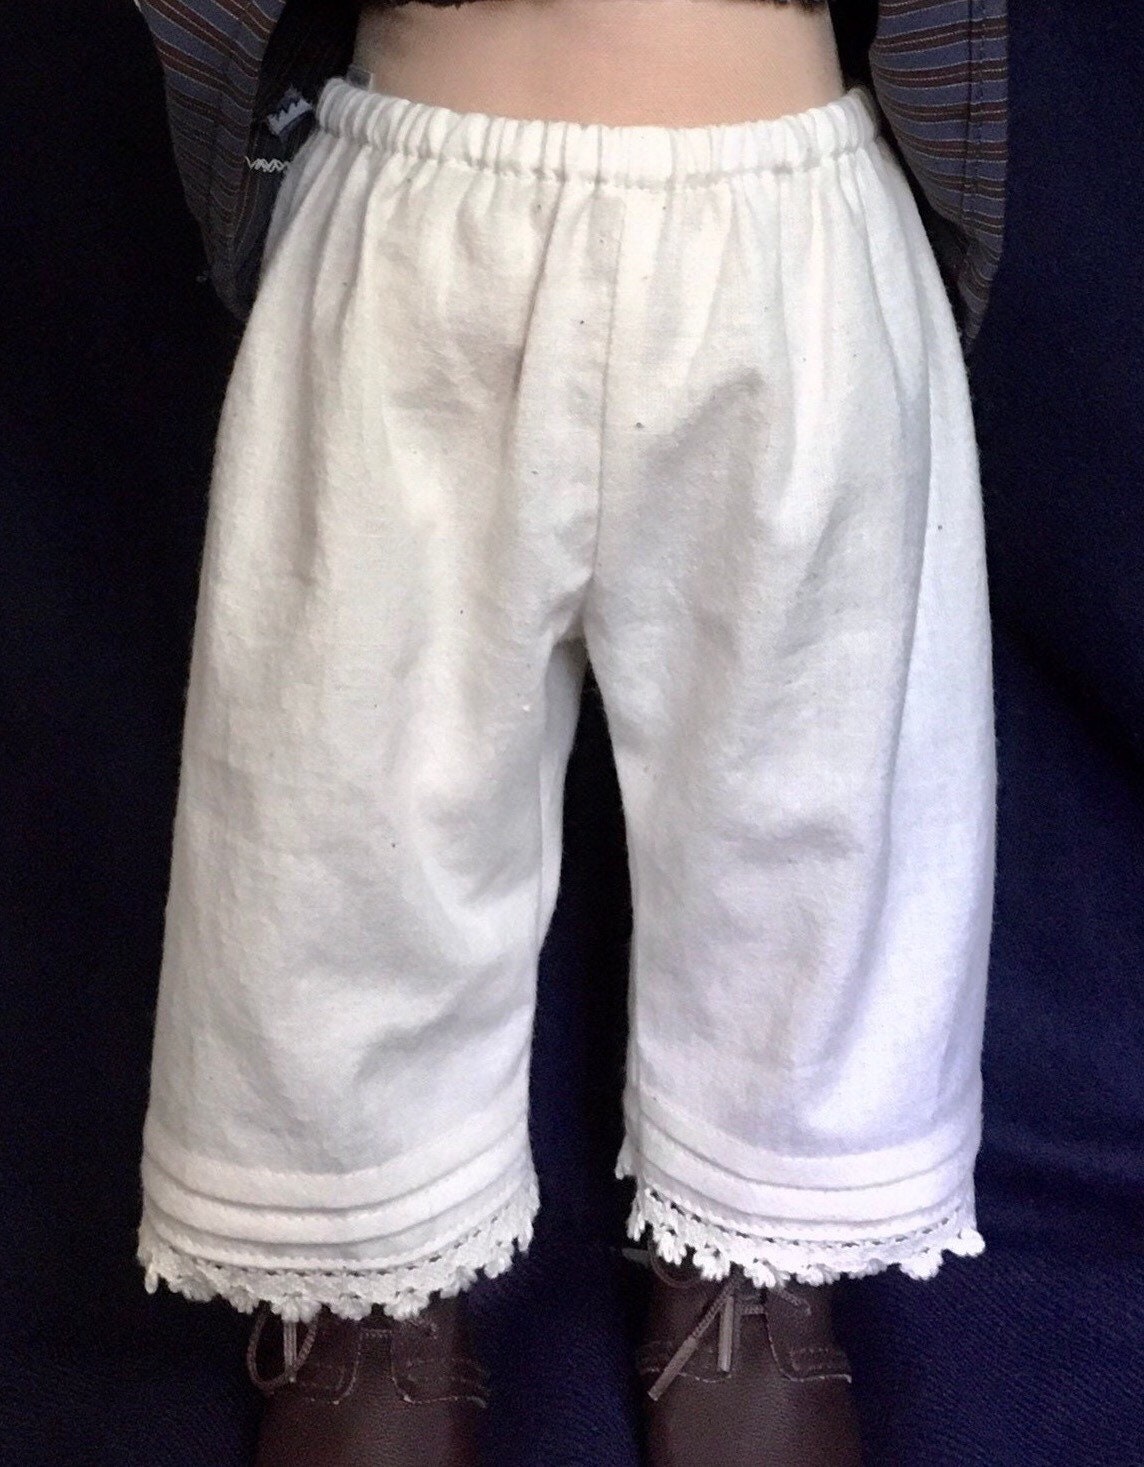 Linen Bloomers Laced for Woman/ Linen Natural Shorts Women's/ Linen  Pantaloons/ Linen Sleep Shorts/ Linen Sleepwear Women's/ Flax Lingerie -   Canada